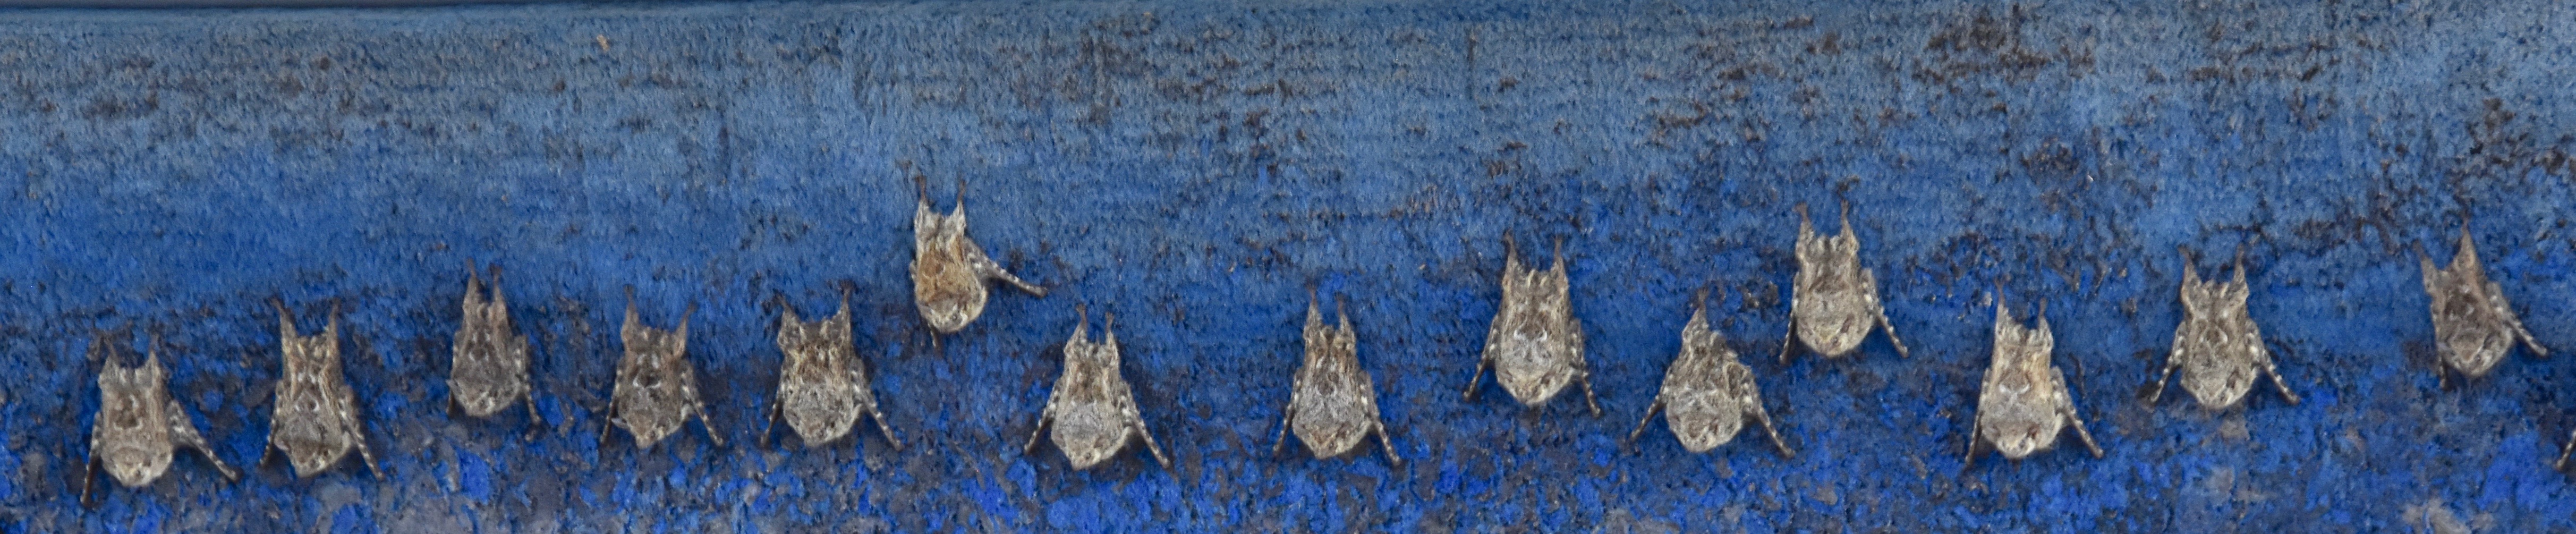 Bats on a Boat, Los Isletas